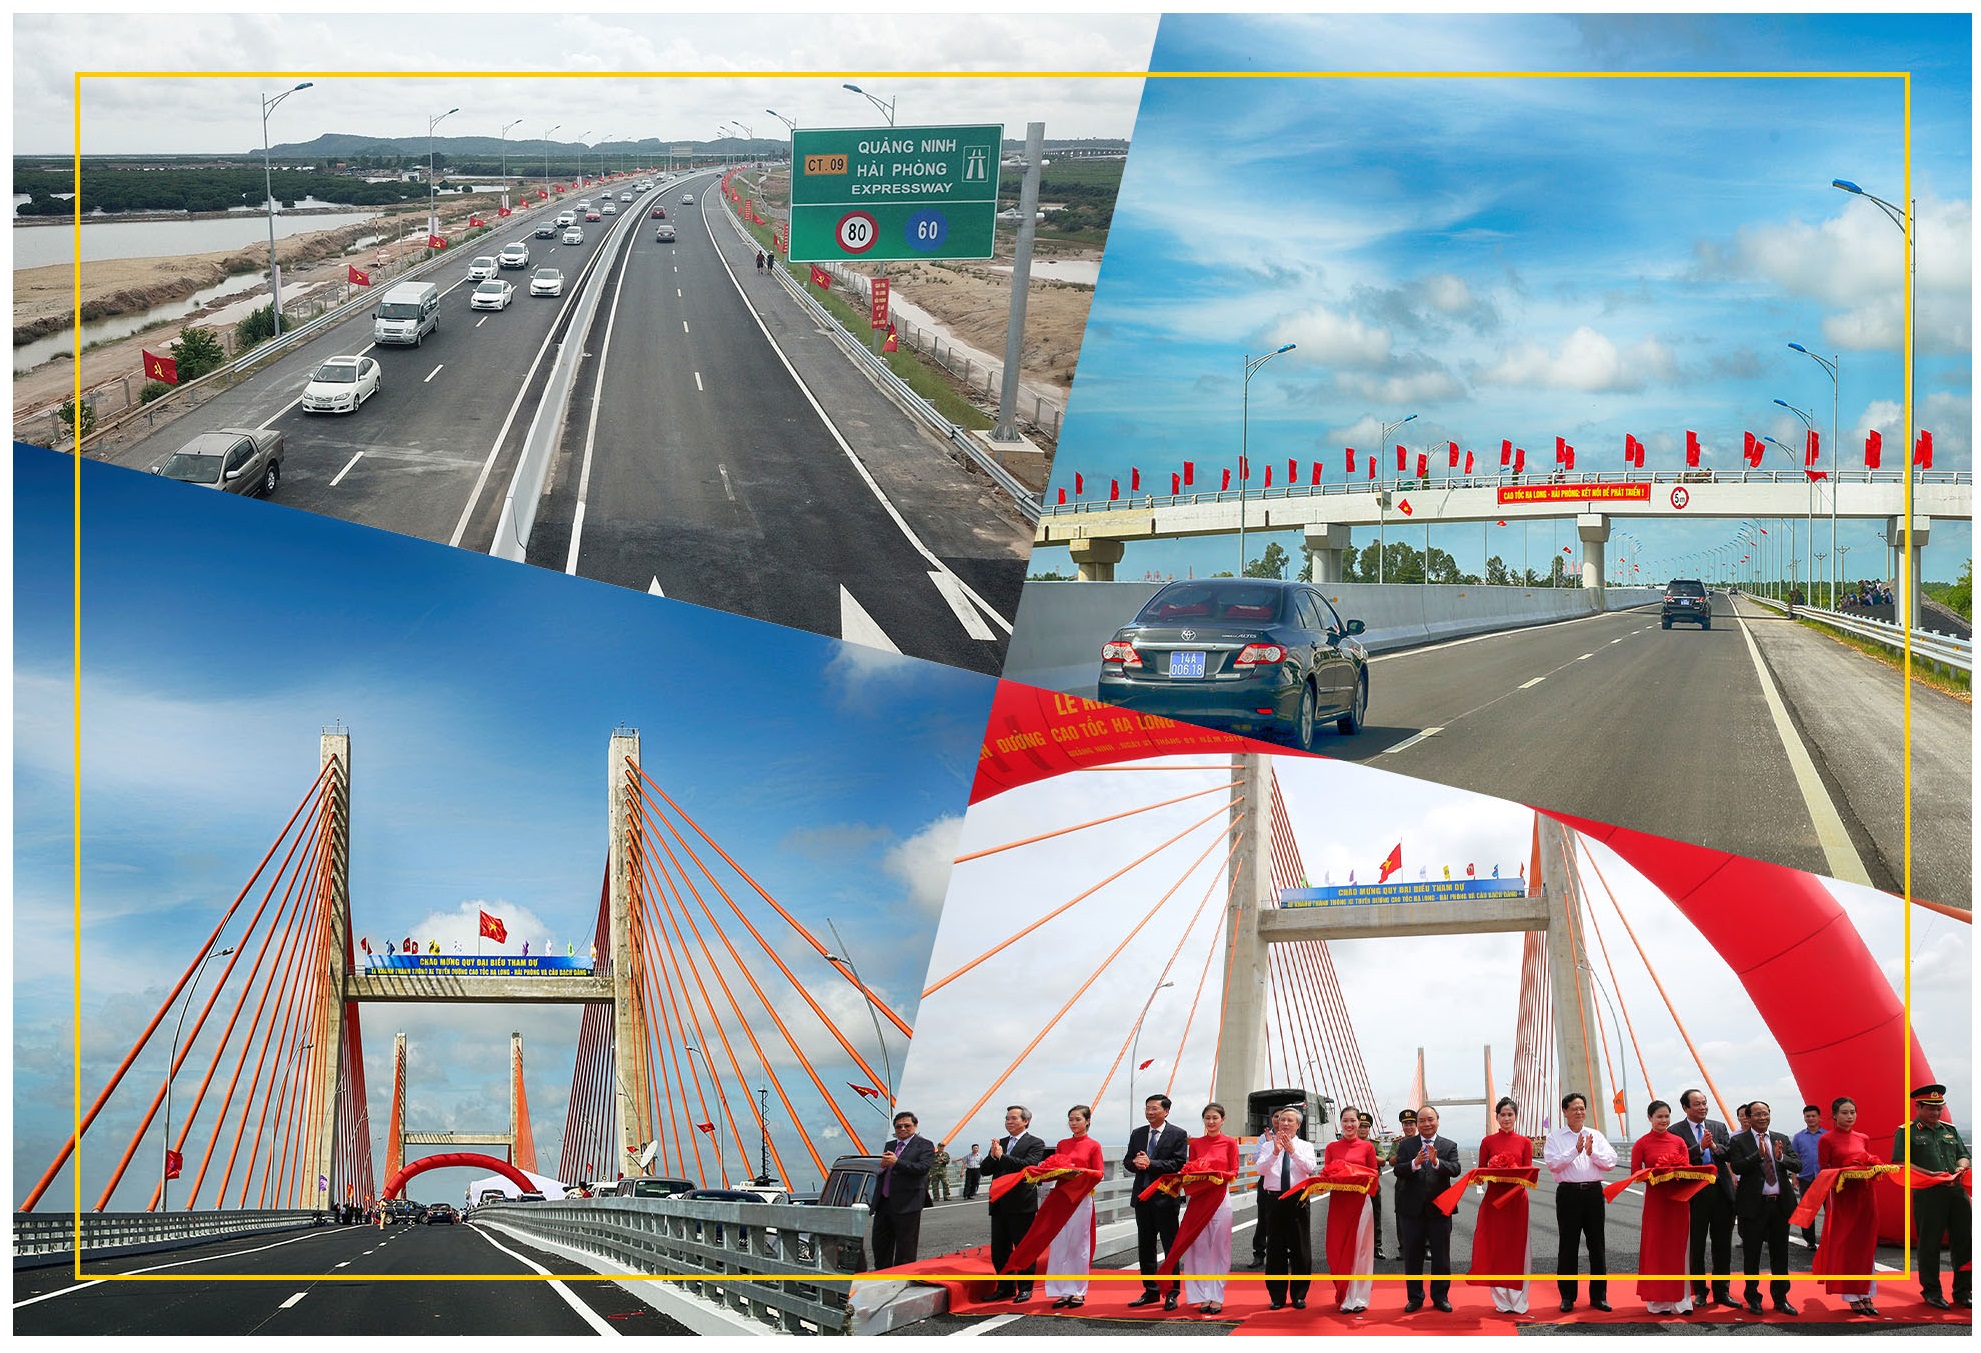 Với tư duy năng động, sáng tạo, đổi mới, Quảng Ninh đã triển khai tuyến cao tốc Hạ Long - Hải Phòng, rút ngắn thời gian từ Quảng Ninh tới thủ đô Hà Nội